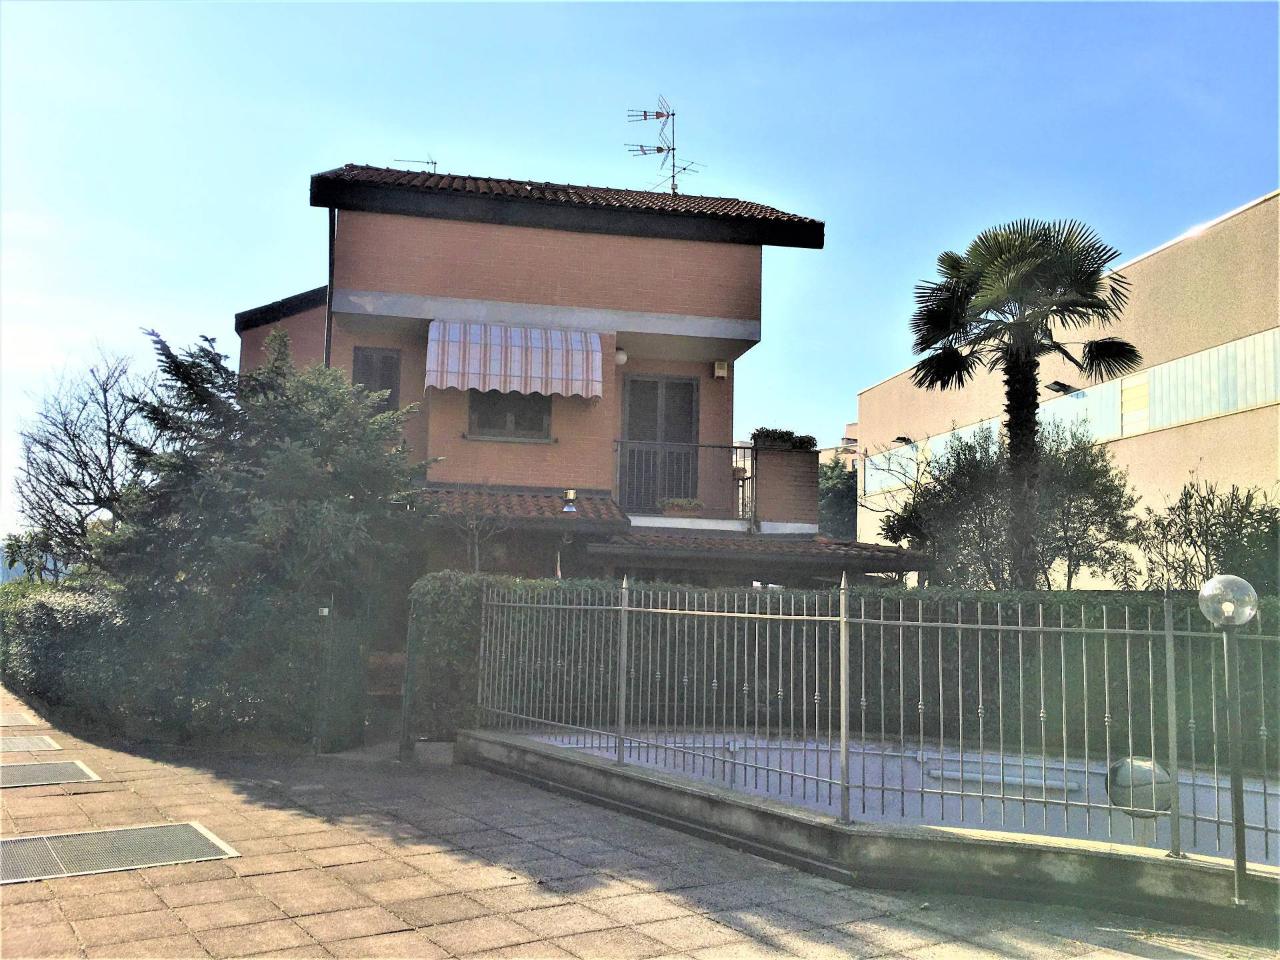 Villa in vendita a Caronno Pertusella